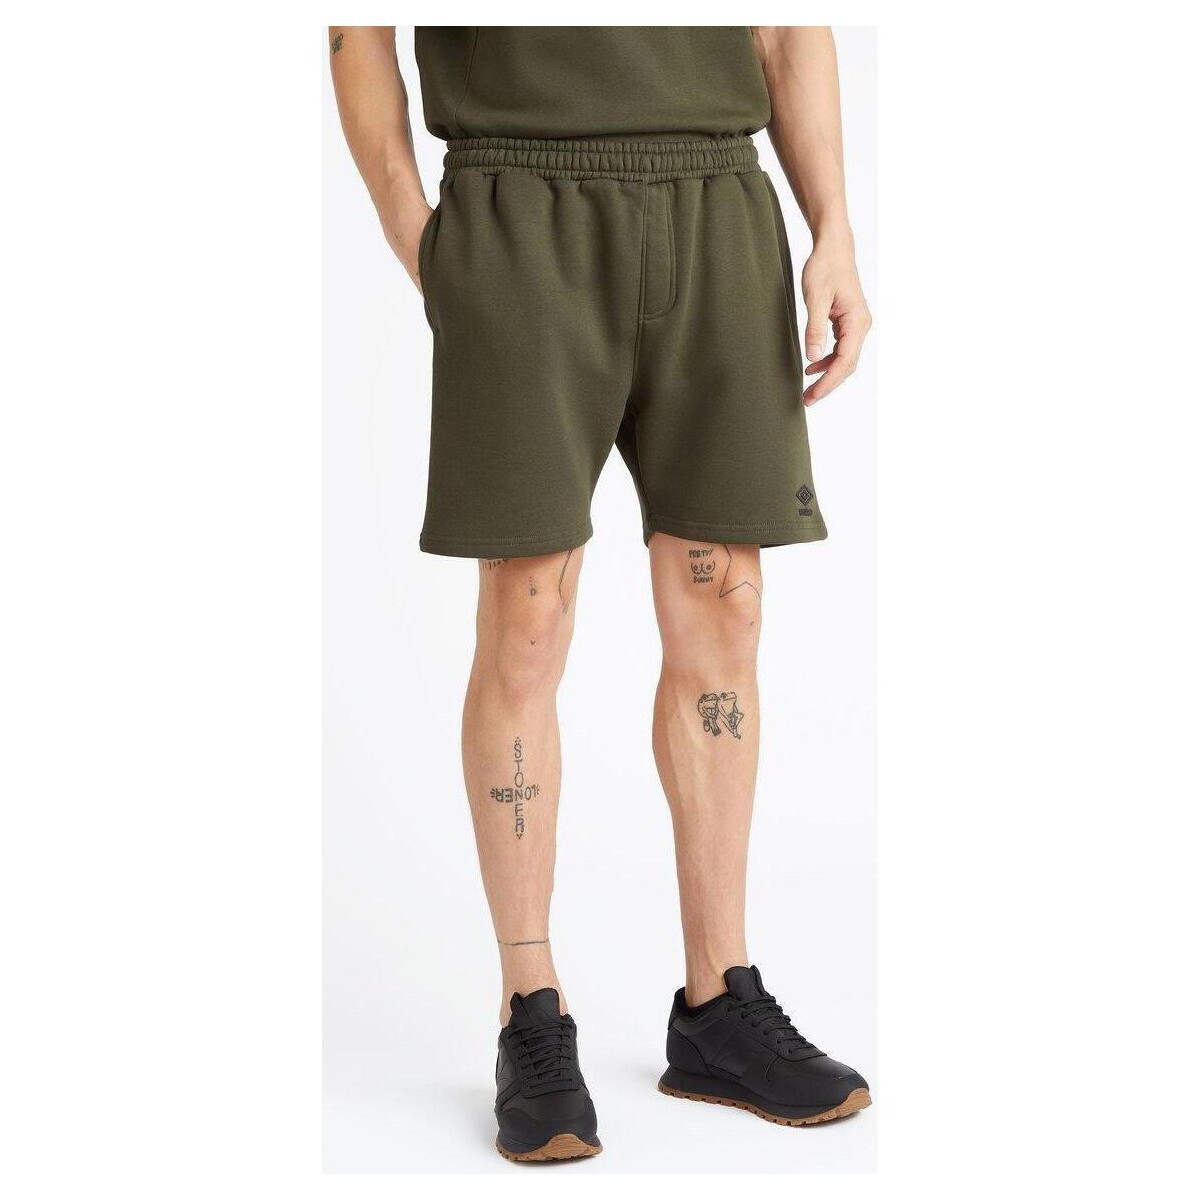 Abbigliamento Uomo Shorts / Bermuda Umbro Core Jog Multicolore